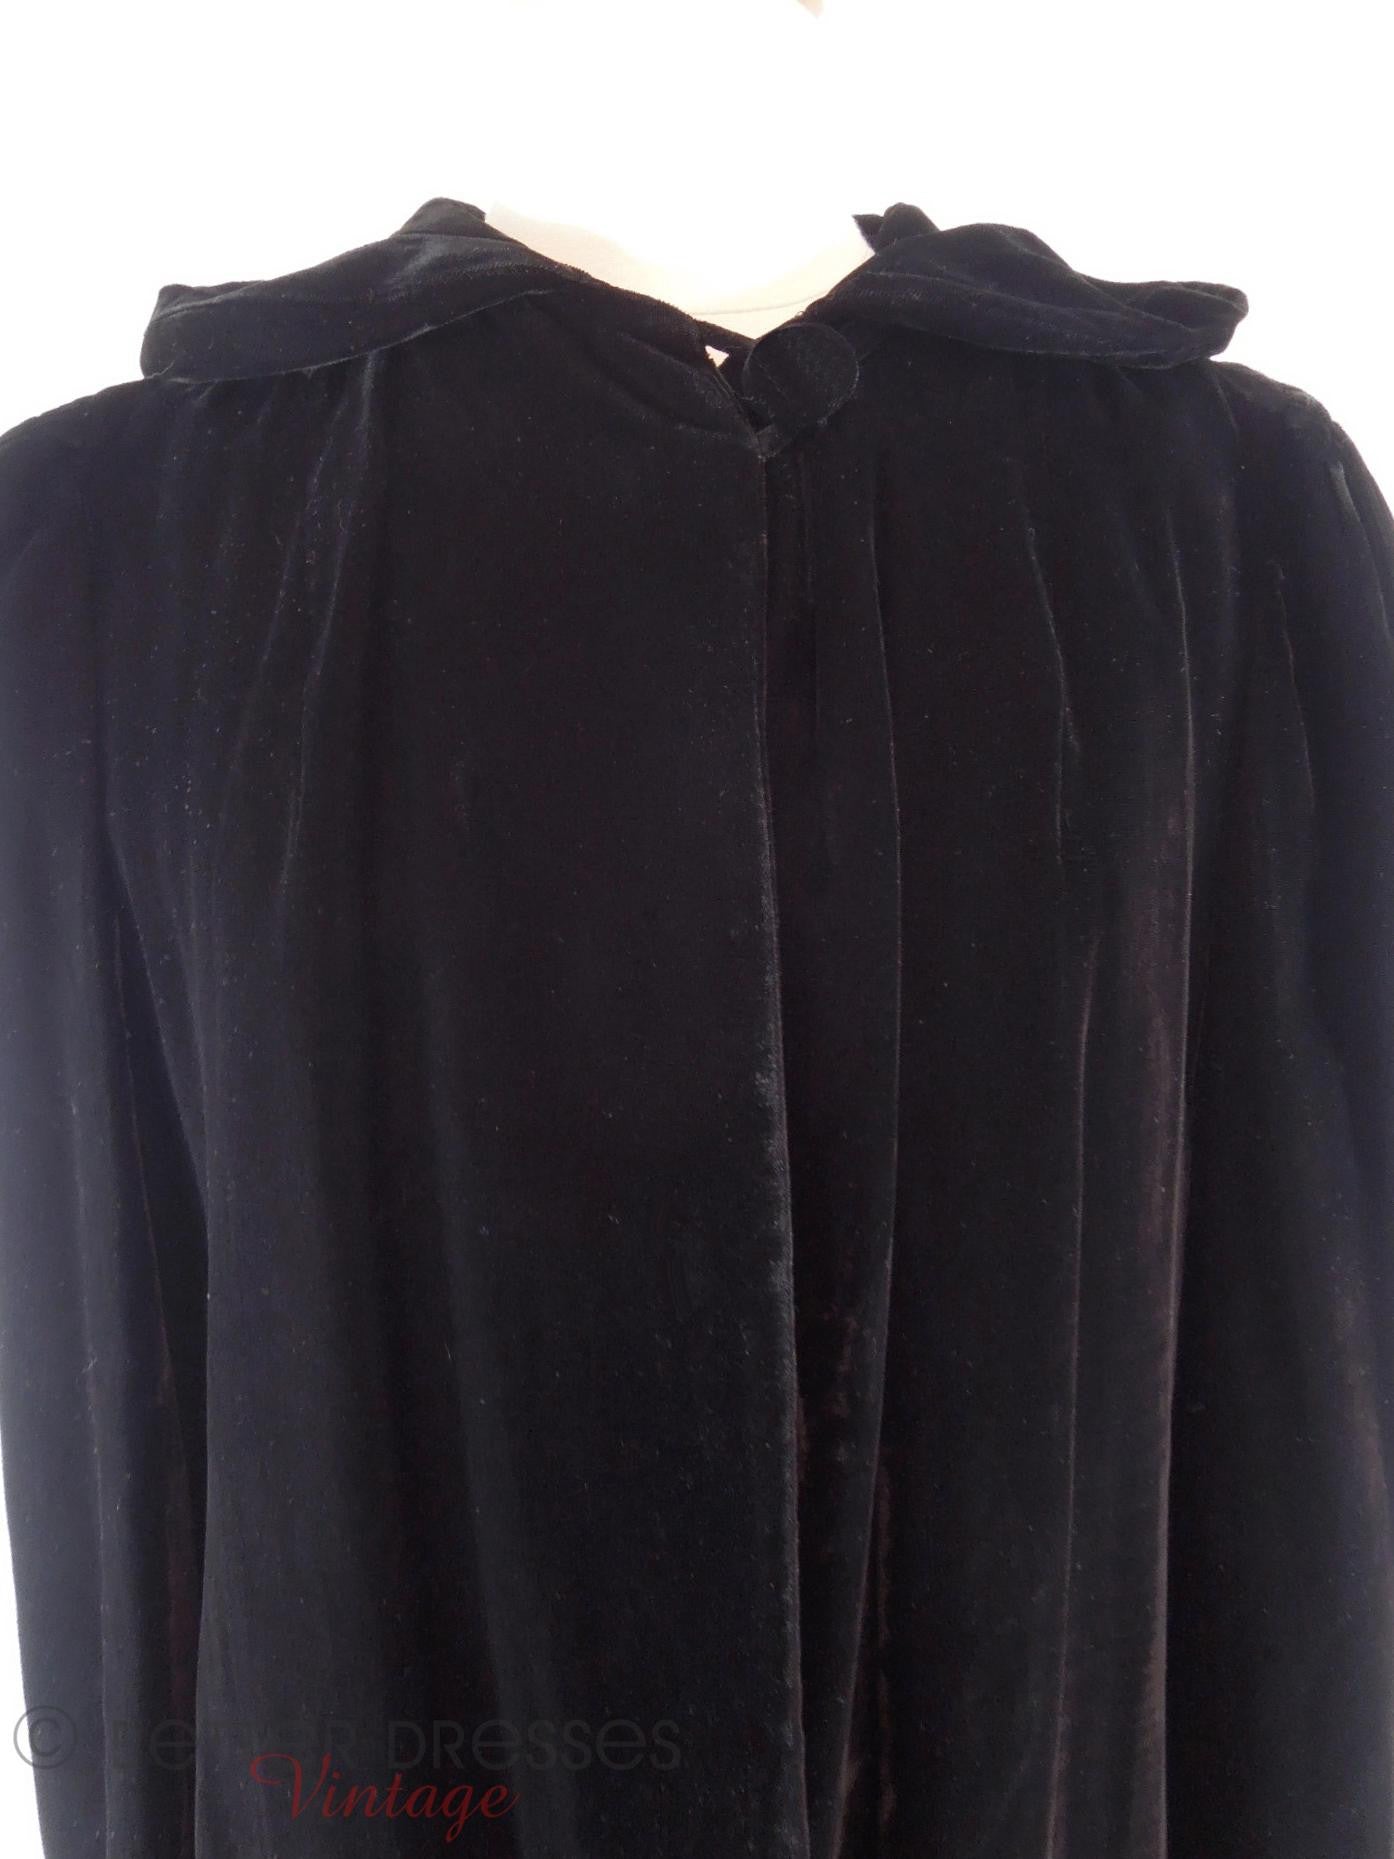 1940s Hooded Black Velvet Opera Jacket - sm, med, lg – Better Dresses ...